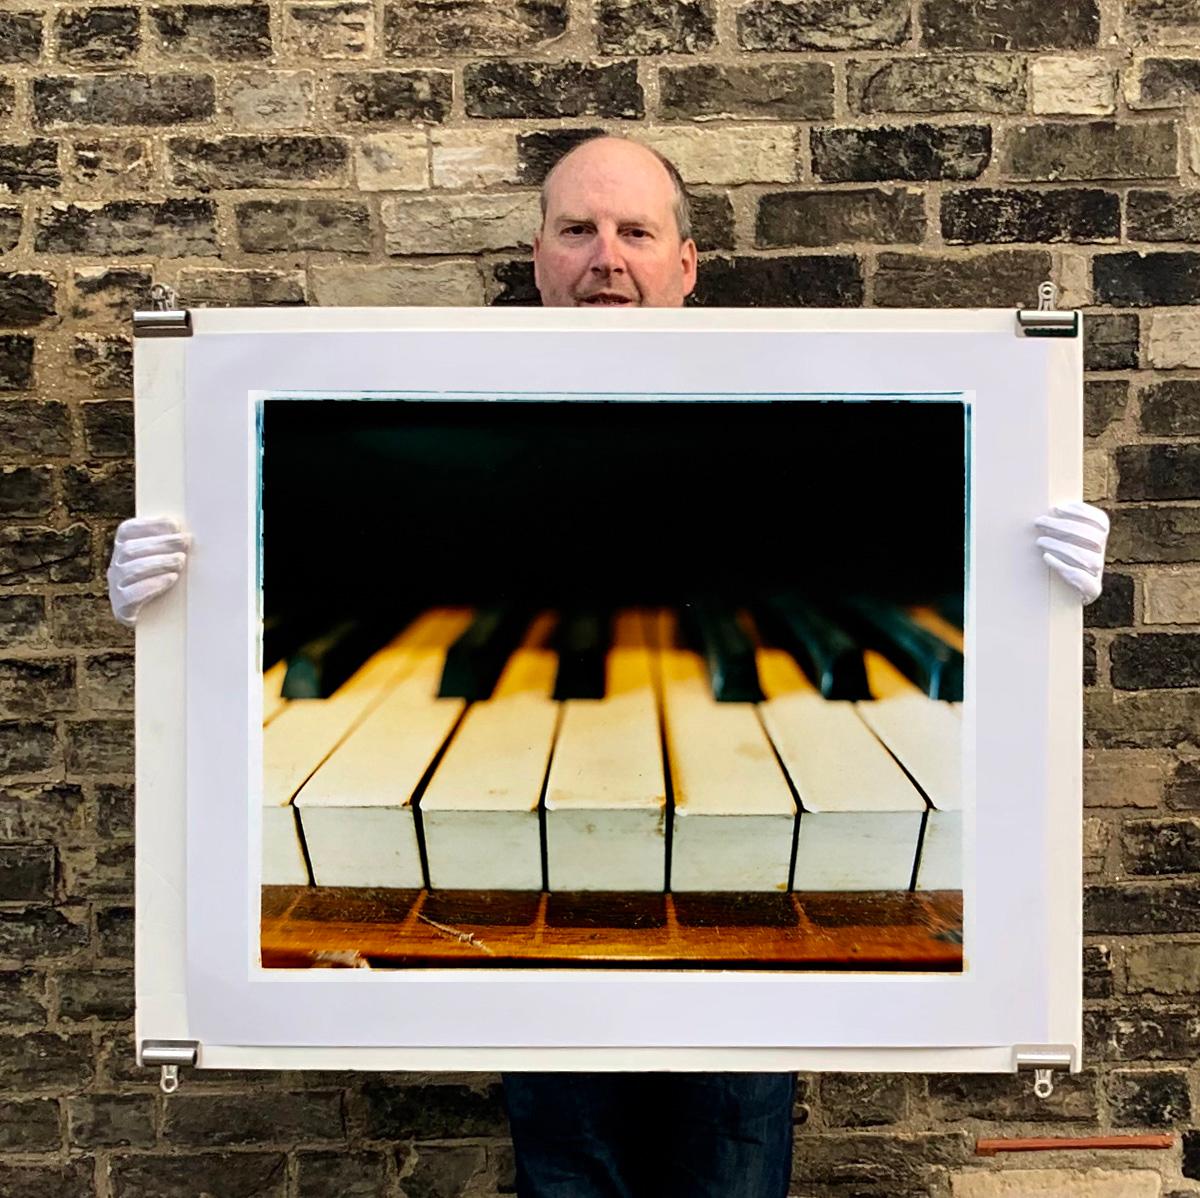 Capturé lors de la documentation du Preston Hall Museum, ce morceau atmosphérique capture magnifiquement le piano en détail.

Cette œuvre est une édition limitée de 25 tirages photographiques brillants réalisés dans la chambre noire de l'artiste.